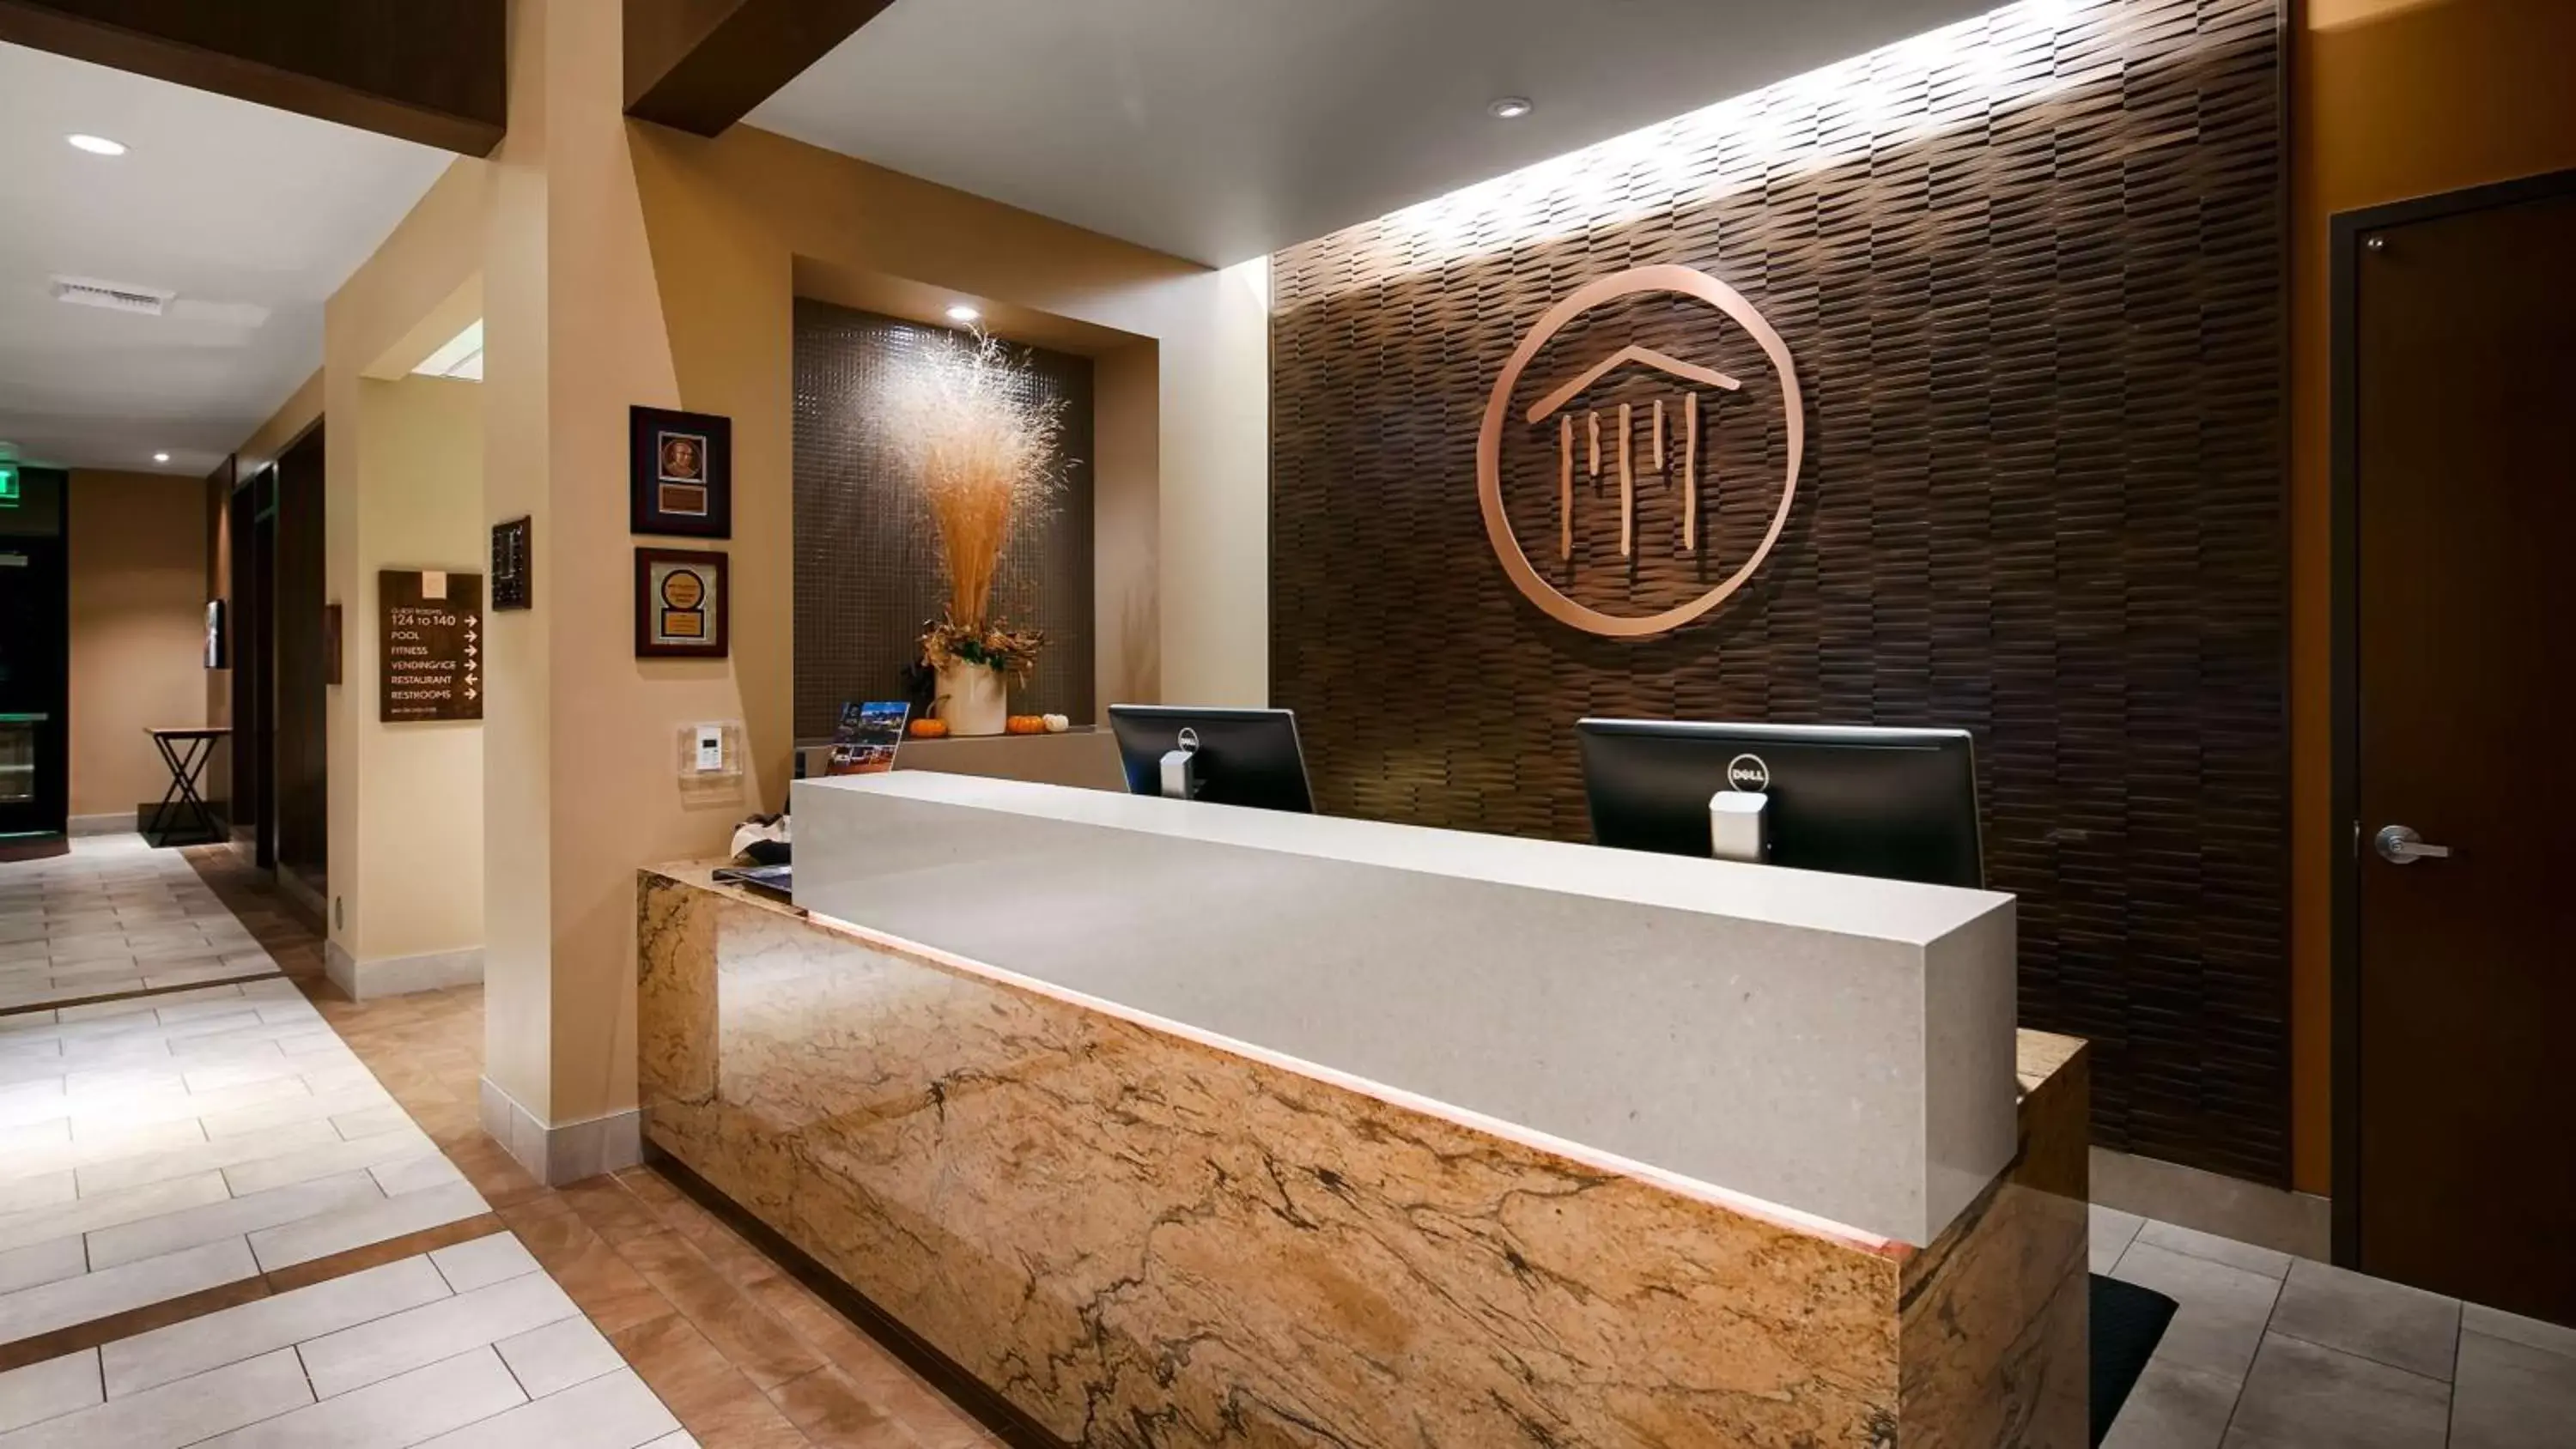 Lobby or reception, Lobby/Reception in Best Western Premier Boulder Falls Inn